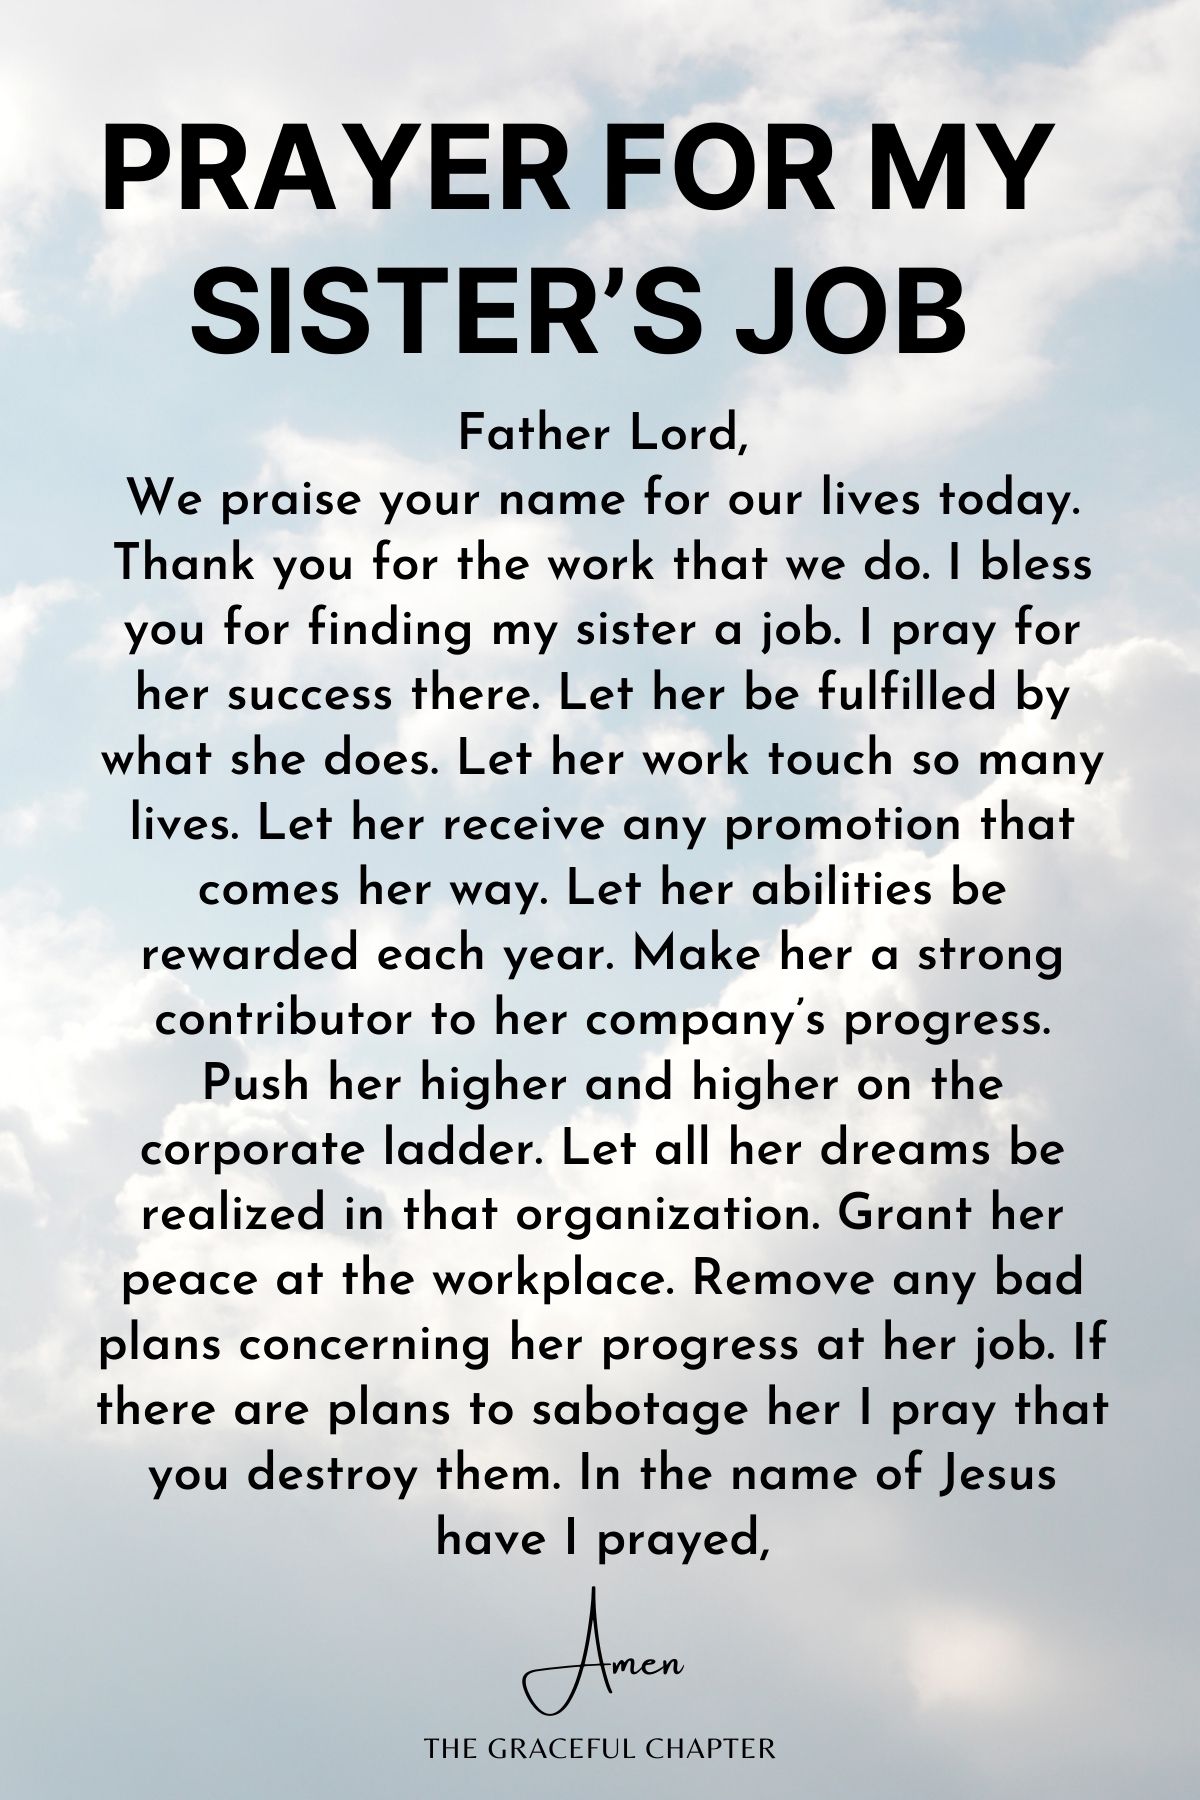 Prayer for my sister’s job